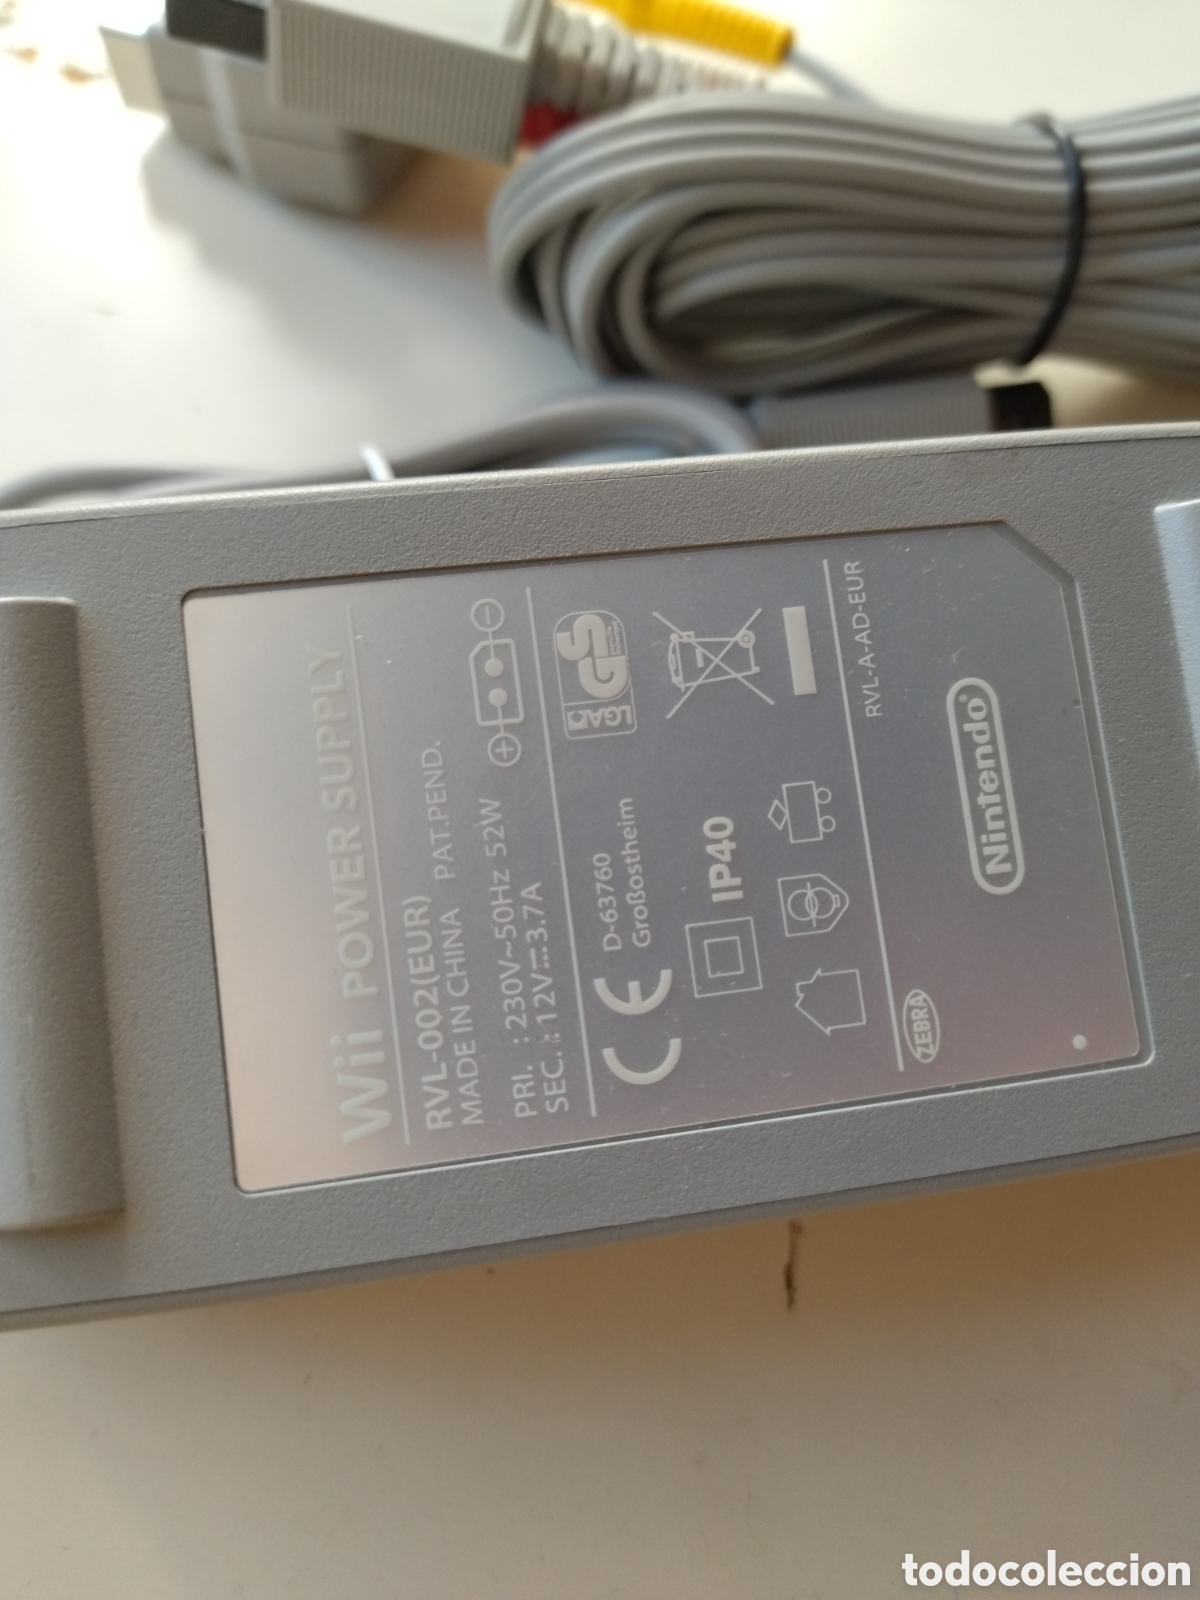 cable av corriente transformador nintendo wii - Comprar y Consolas Nintendo Wii segunda mano en todocoleccion - 383314414